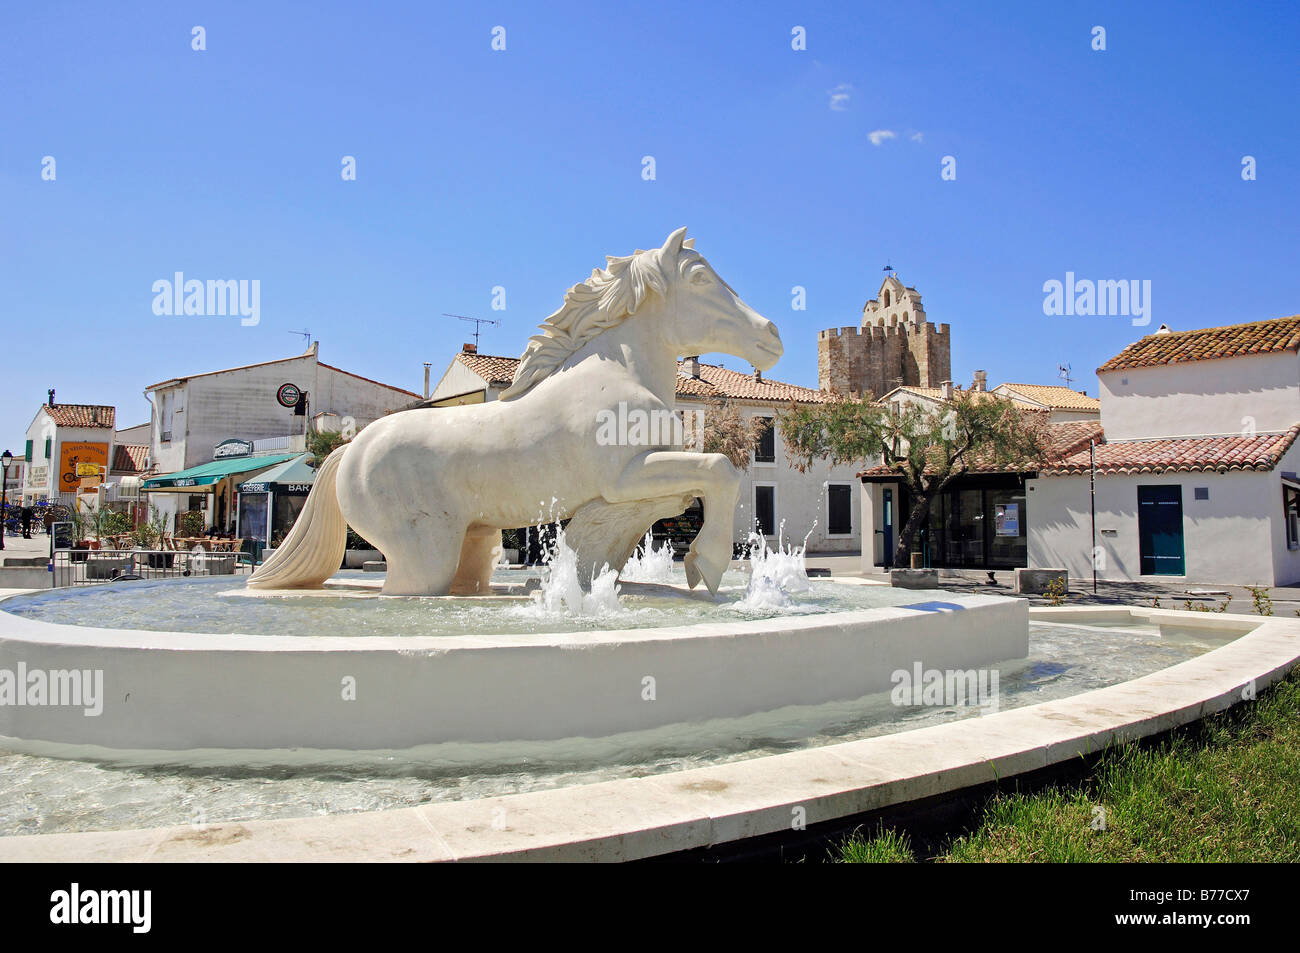 Statue of Camargue Horse and fountain, Les Saintes-Maries-de-la-Mer, Camargue, Bouches-du-Rhone, Provence-Alpes-Cote d'Azur, So Stock Photo